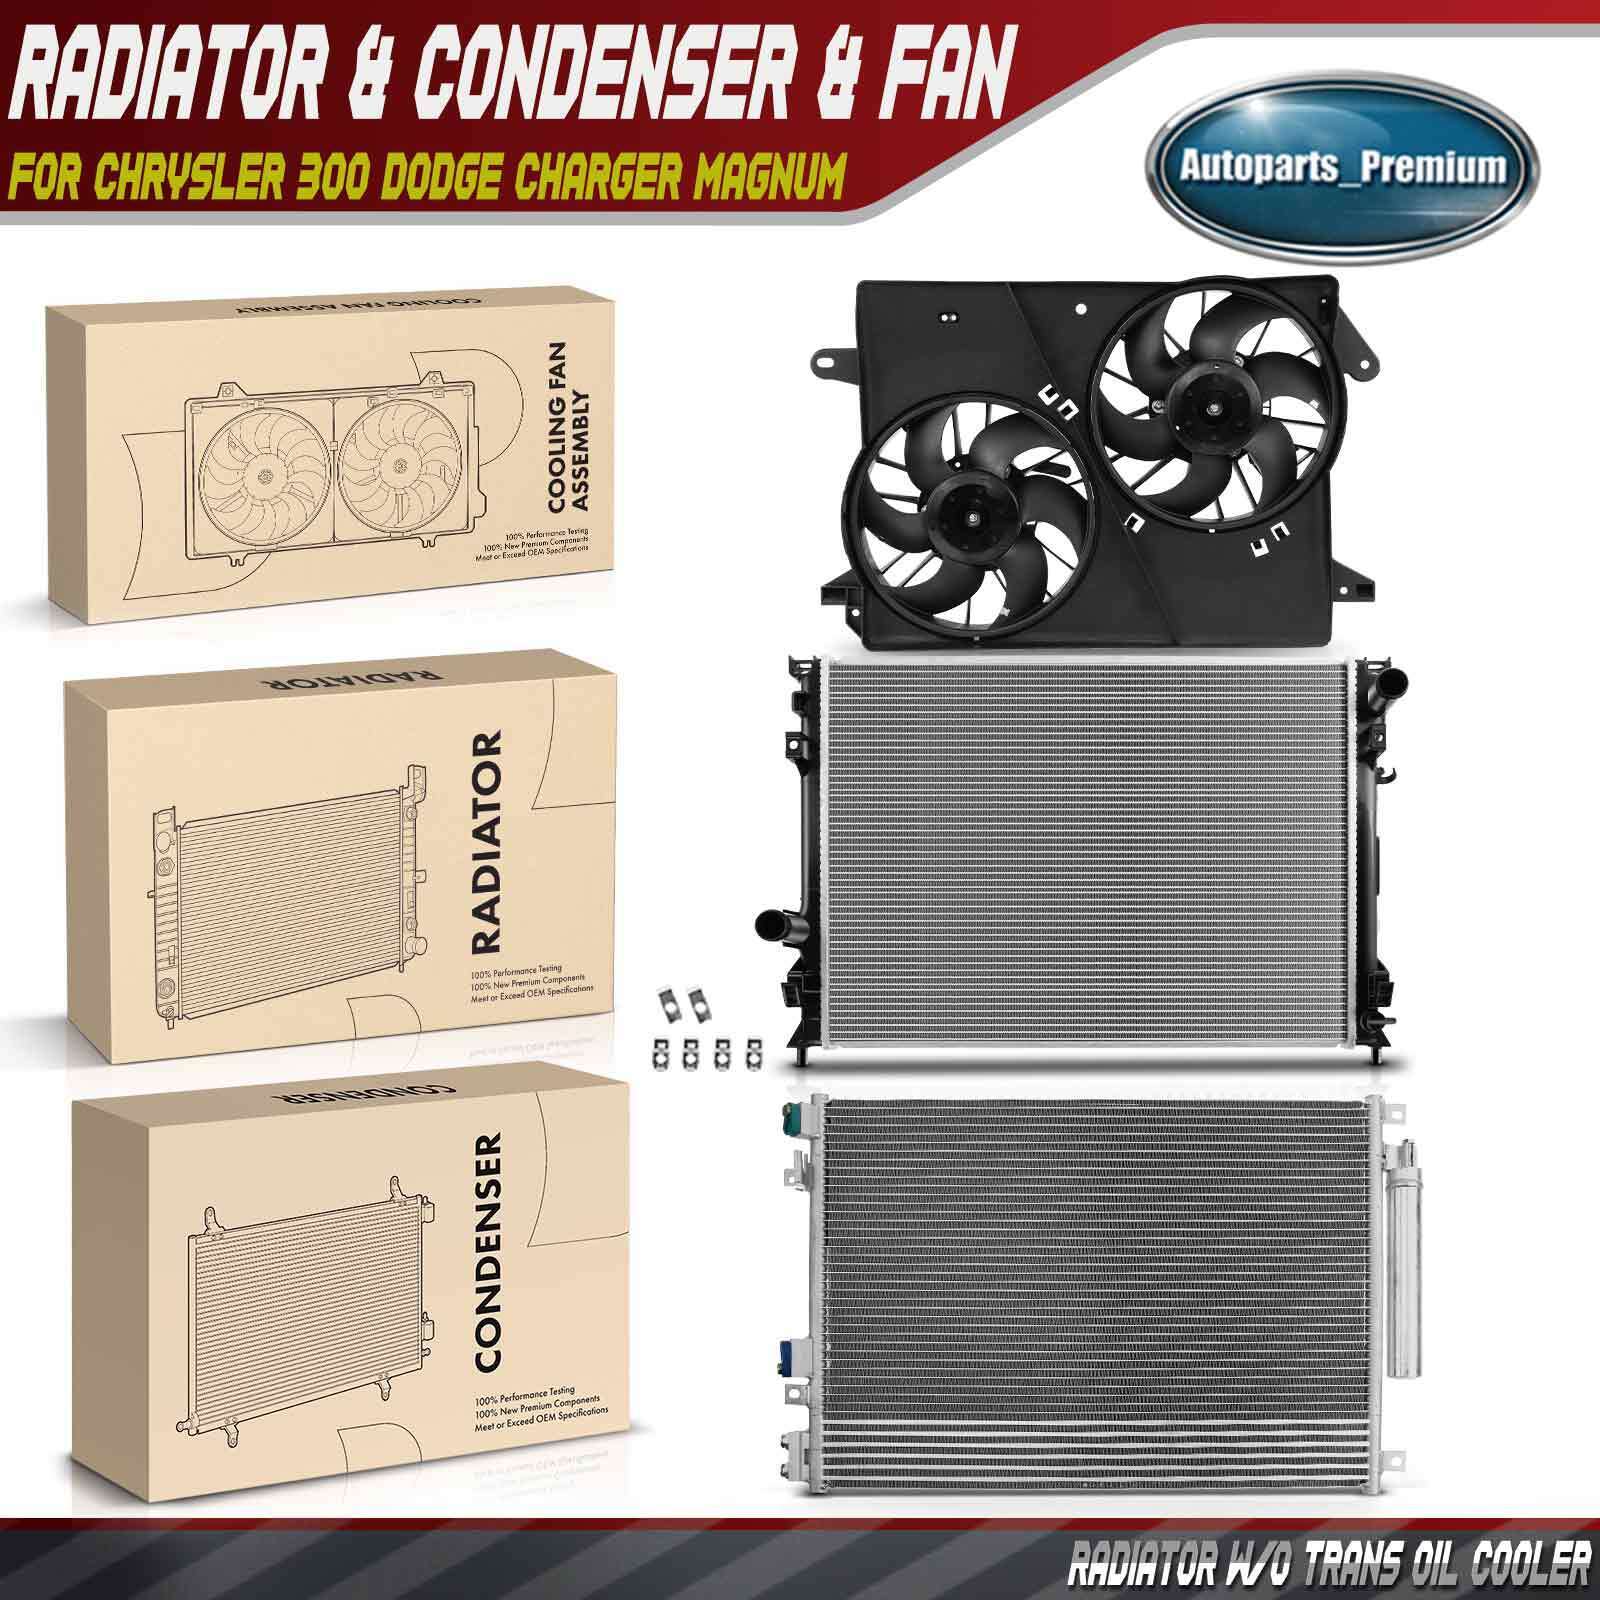 Radiator & AC Condenser & Cooling Fan Kit for Chrysler 300 Dodge Charger Magnum